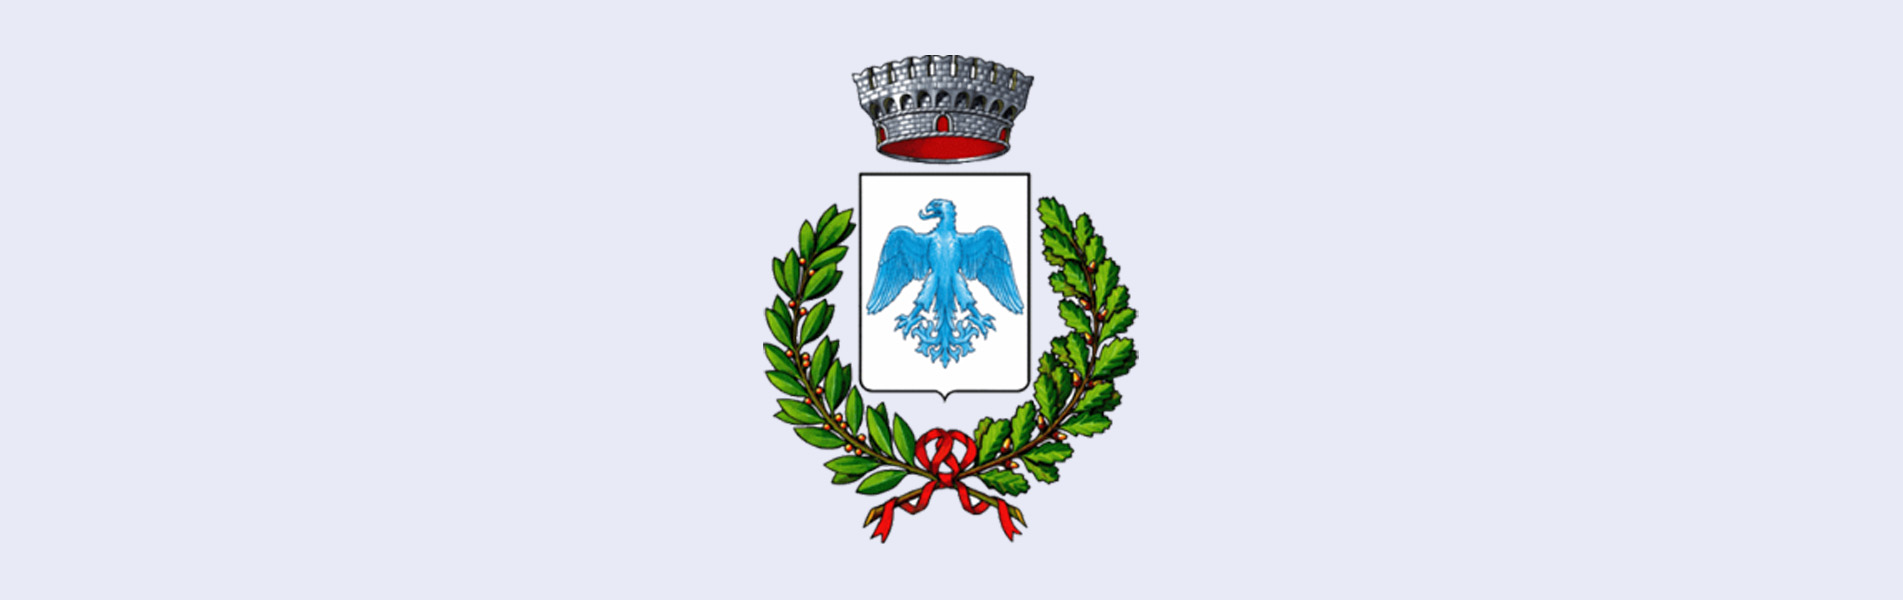 Immagine con stemma di Bagnatica